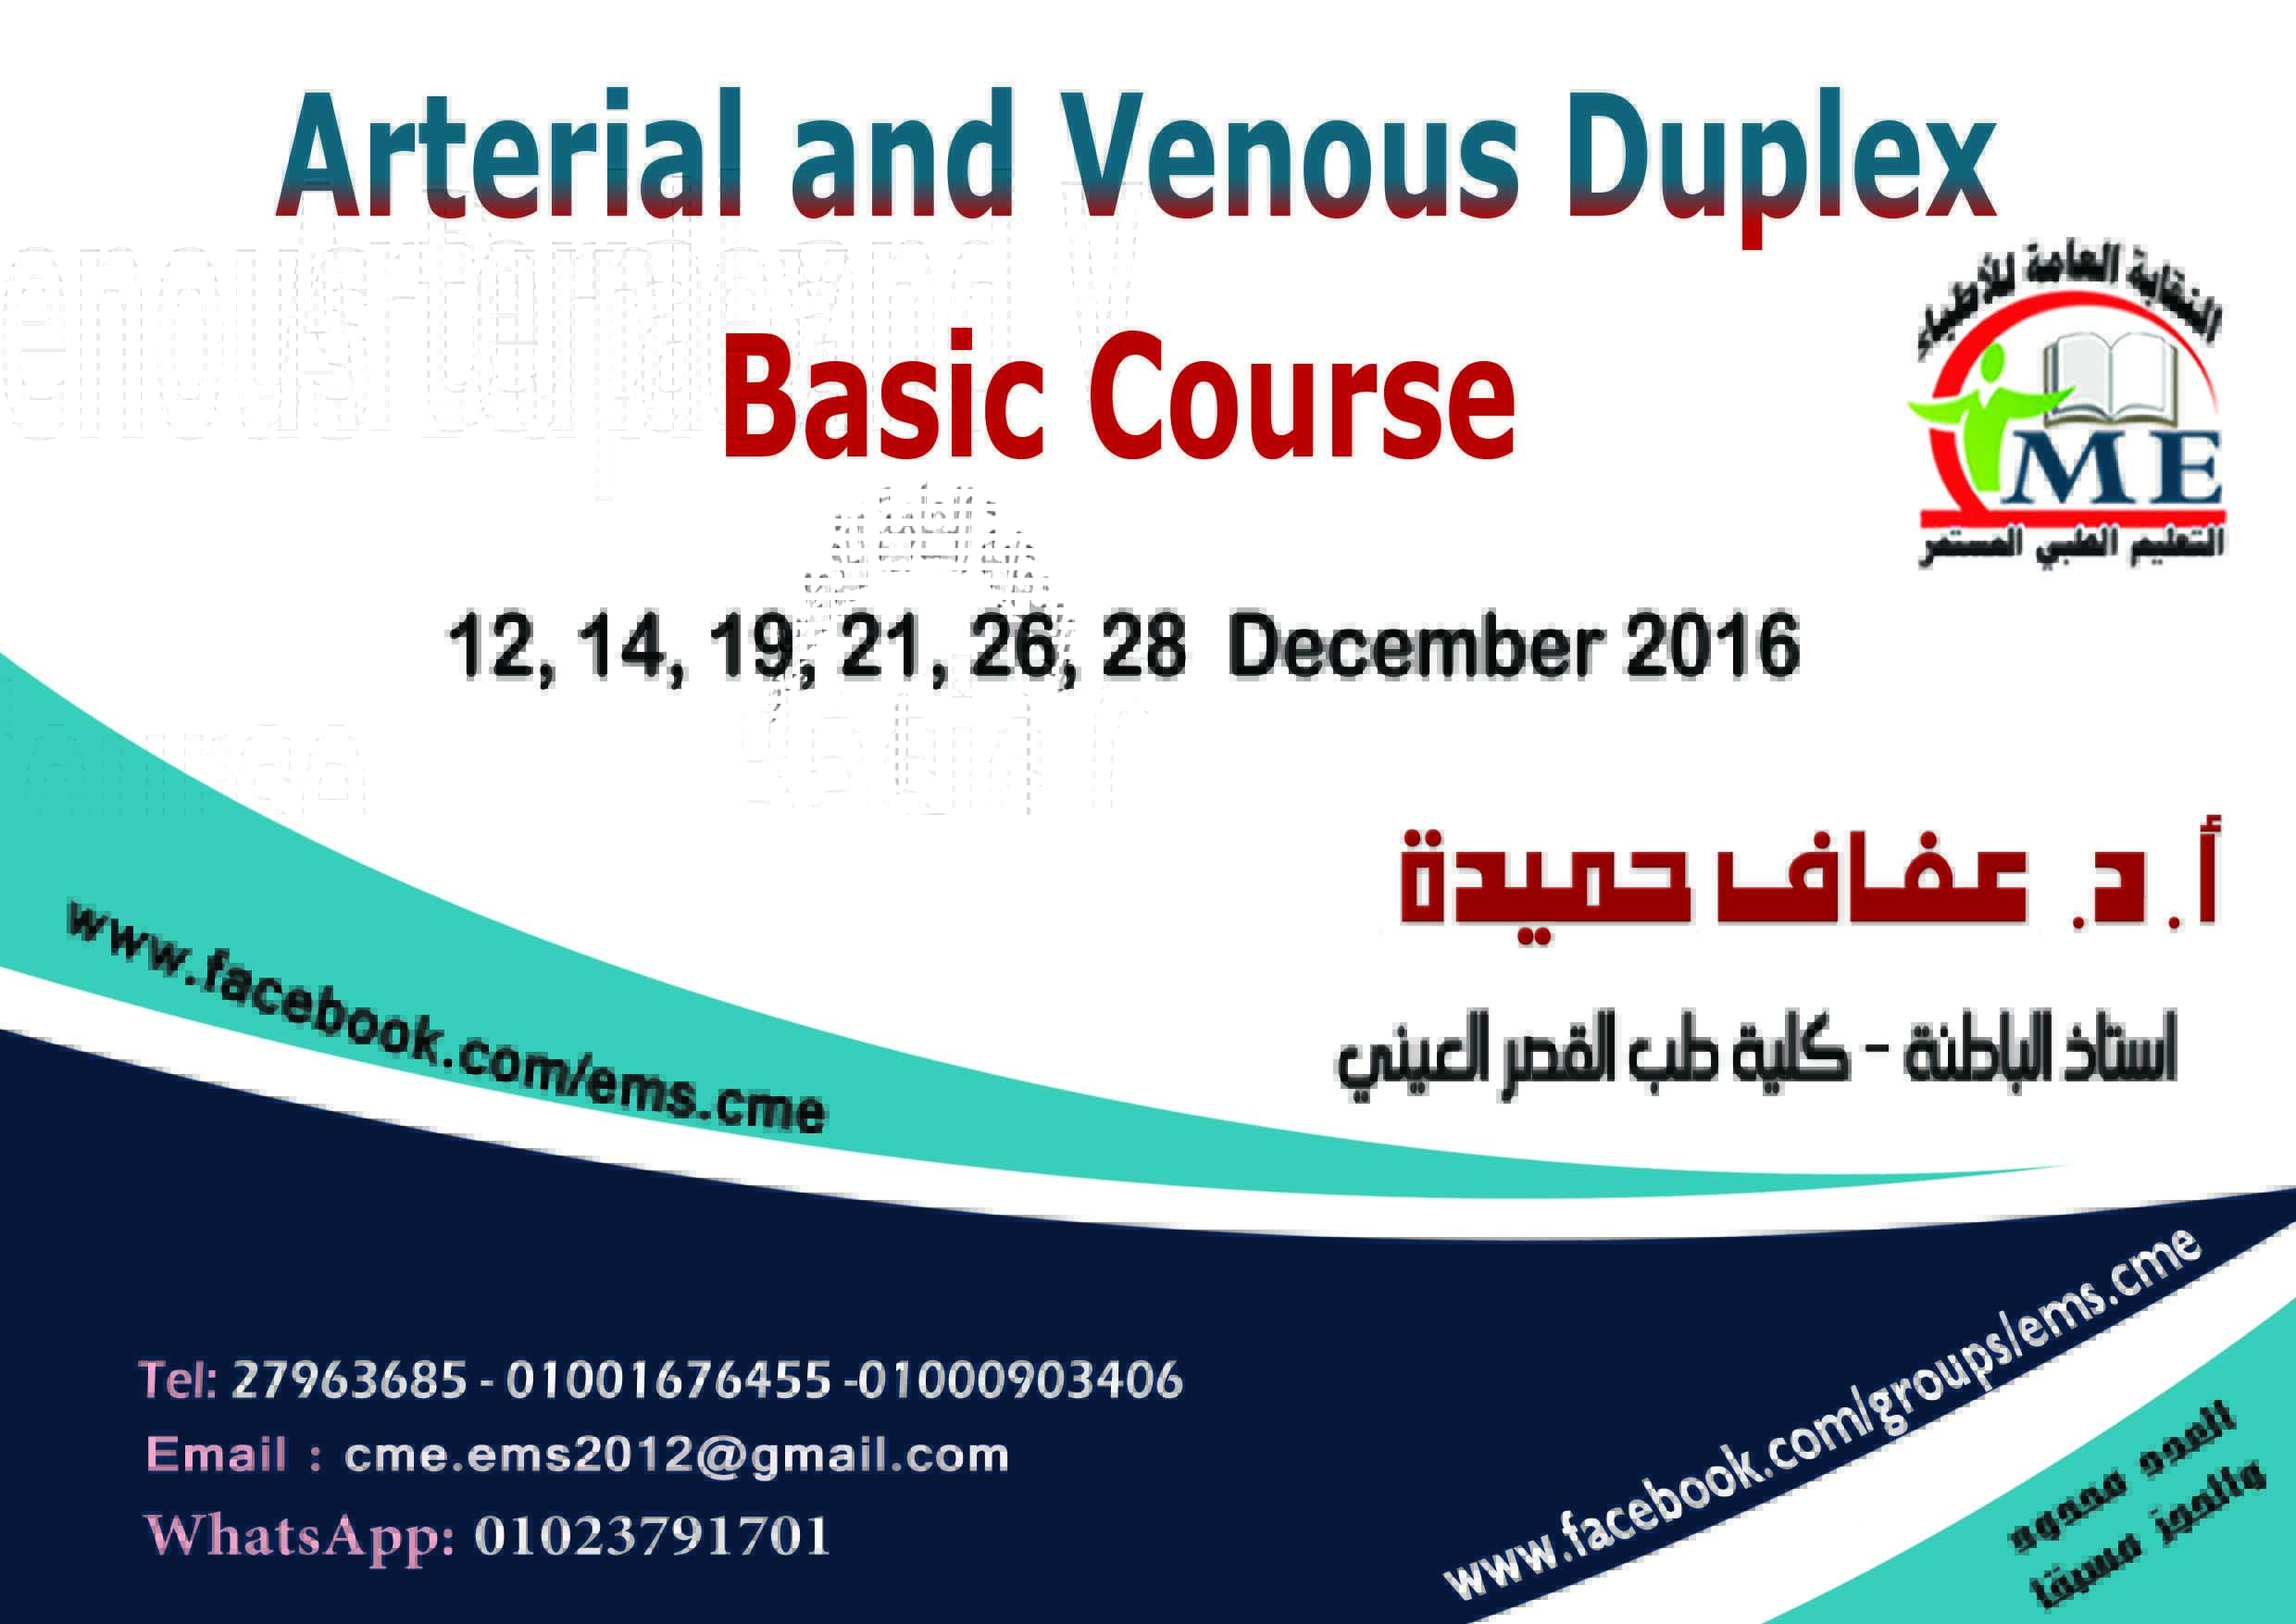 Arterial and Venous Duplex Basic Course